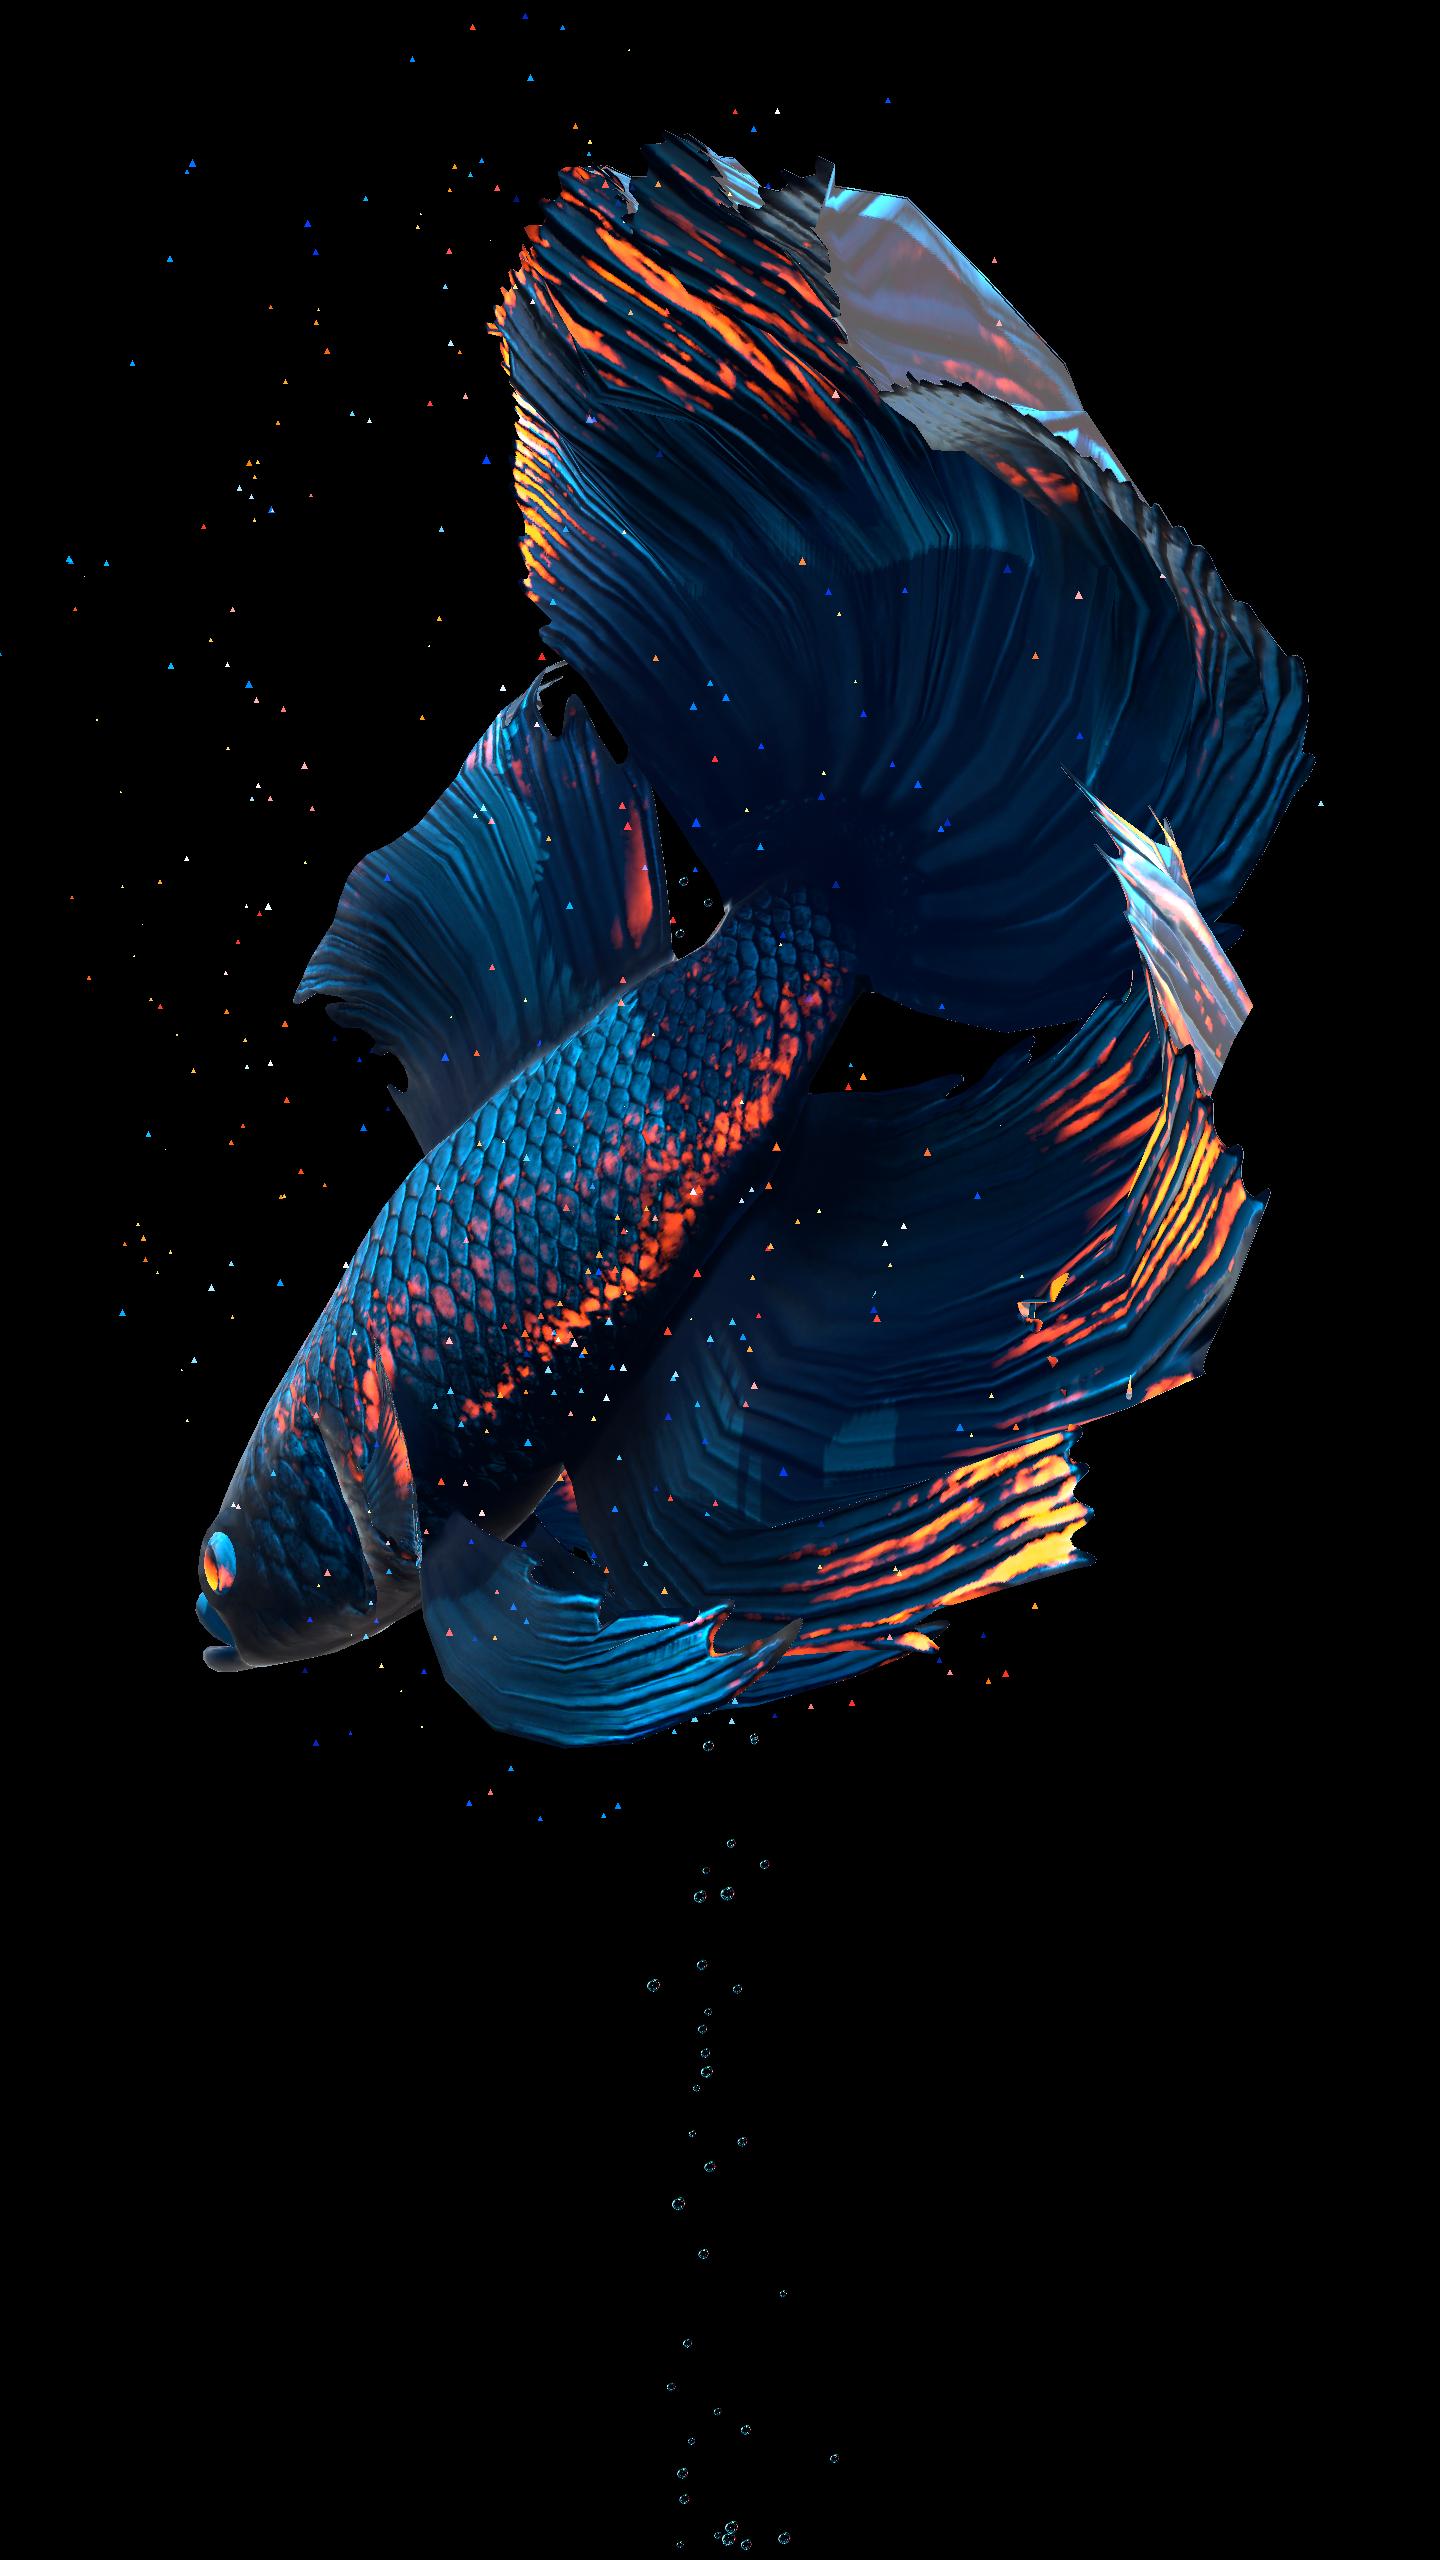 라이브 이미지 벽지,푸른,물고기,물고기,강청색,해양 생물학